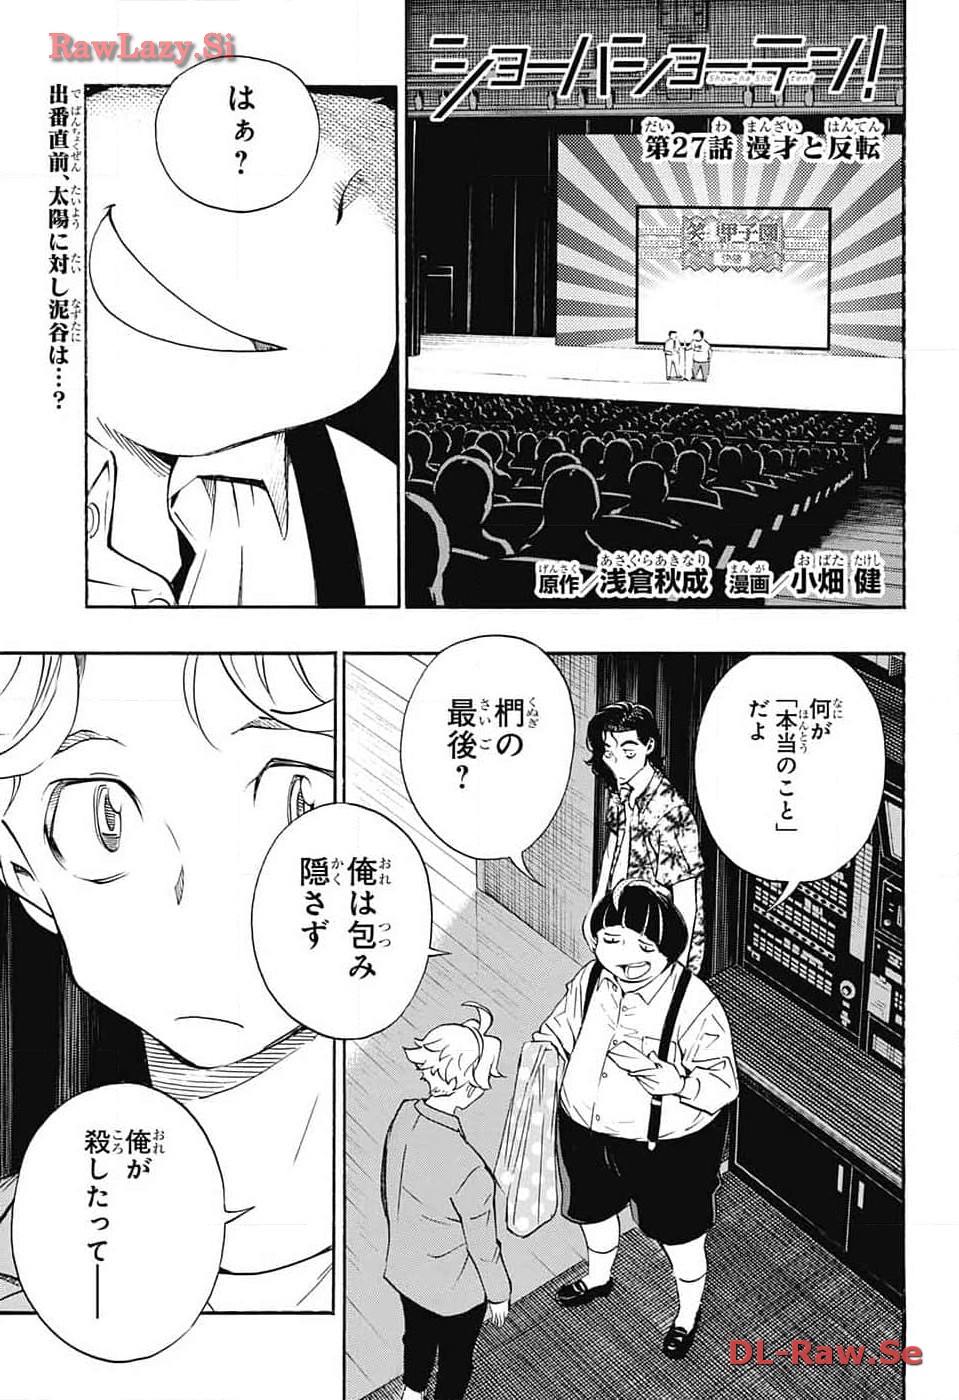 Show-ha Shou-ten! - Chapter 27 - Page 1